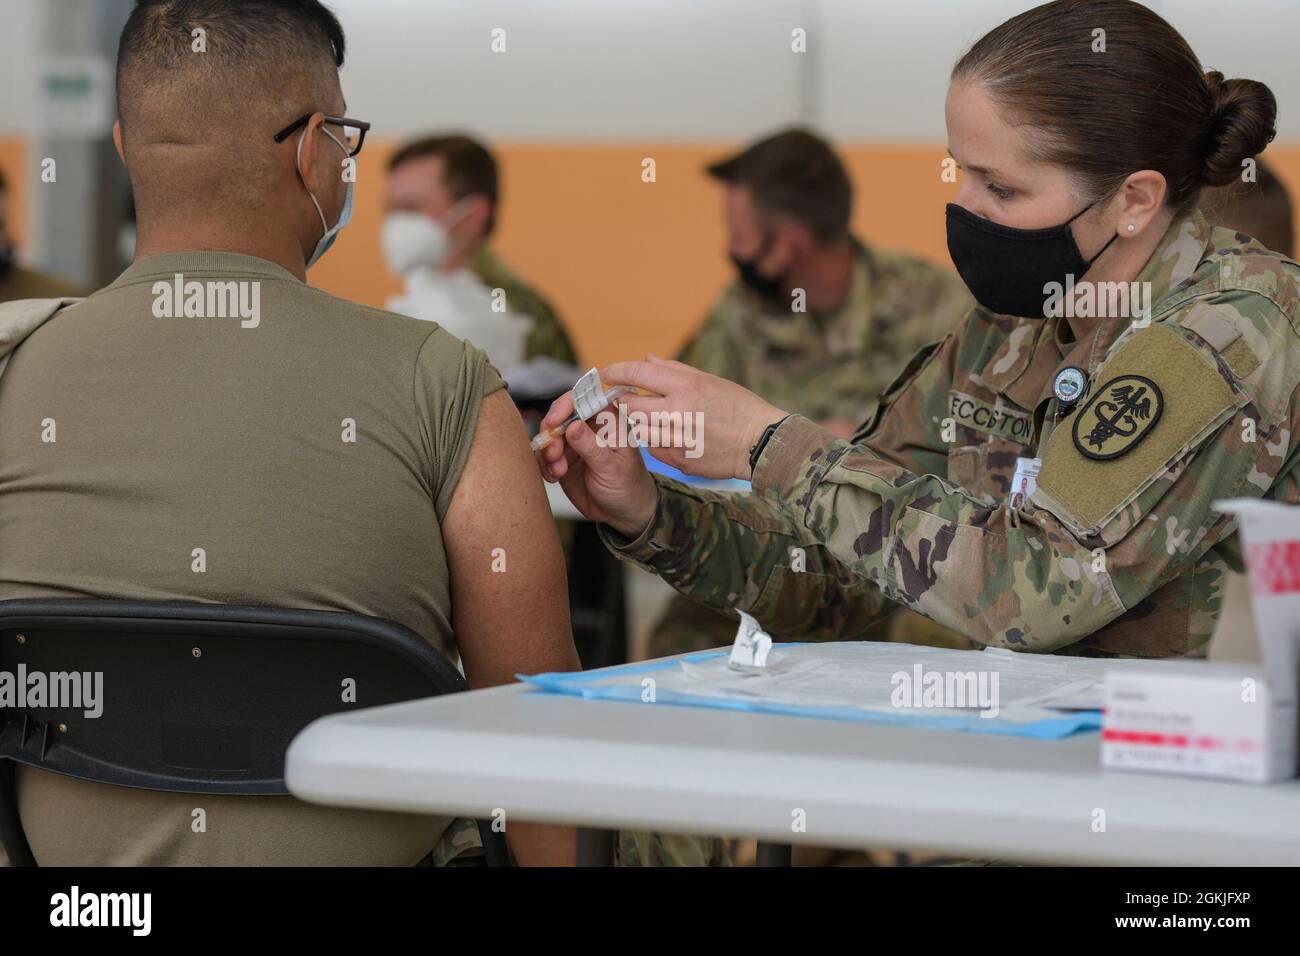 Sarah Eccleston, derecha, comandante de la clínica de la Clínica de Salud del Ejército de EE.UU. Vilseck, administra una vacuna COVID-19 en el Comando de Entrenamiento del Ejército de 7th (7ATC), Rose Barracks, Vilseck, Alemania, 3 de mayo de 2021. Las Clínicas de Salud del Ejército de los Estados Unidos en Grafenwoehr y Vilseck llevaron a cabo una campaña de vacunación 'Una Comunidad' COVID-19 el 3-7 de mayo para proporcionar miles de nombramientos a la comunidad de 7ATC soldados, cónyuges, civiles del Departamento del Ejército, veteranos y nacionales locales empleados por el Ejército de los Estados Unidos. Foto de stock